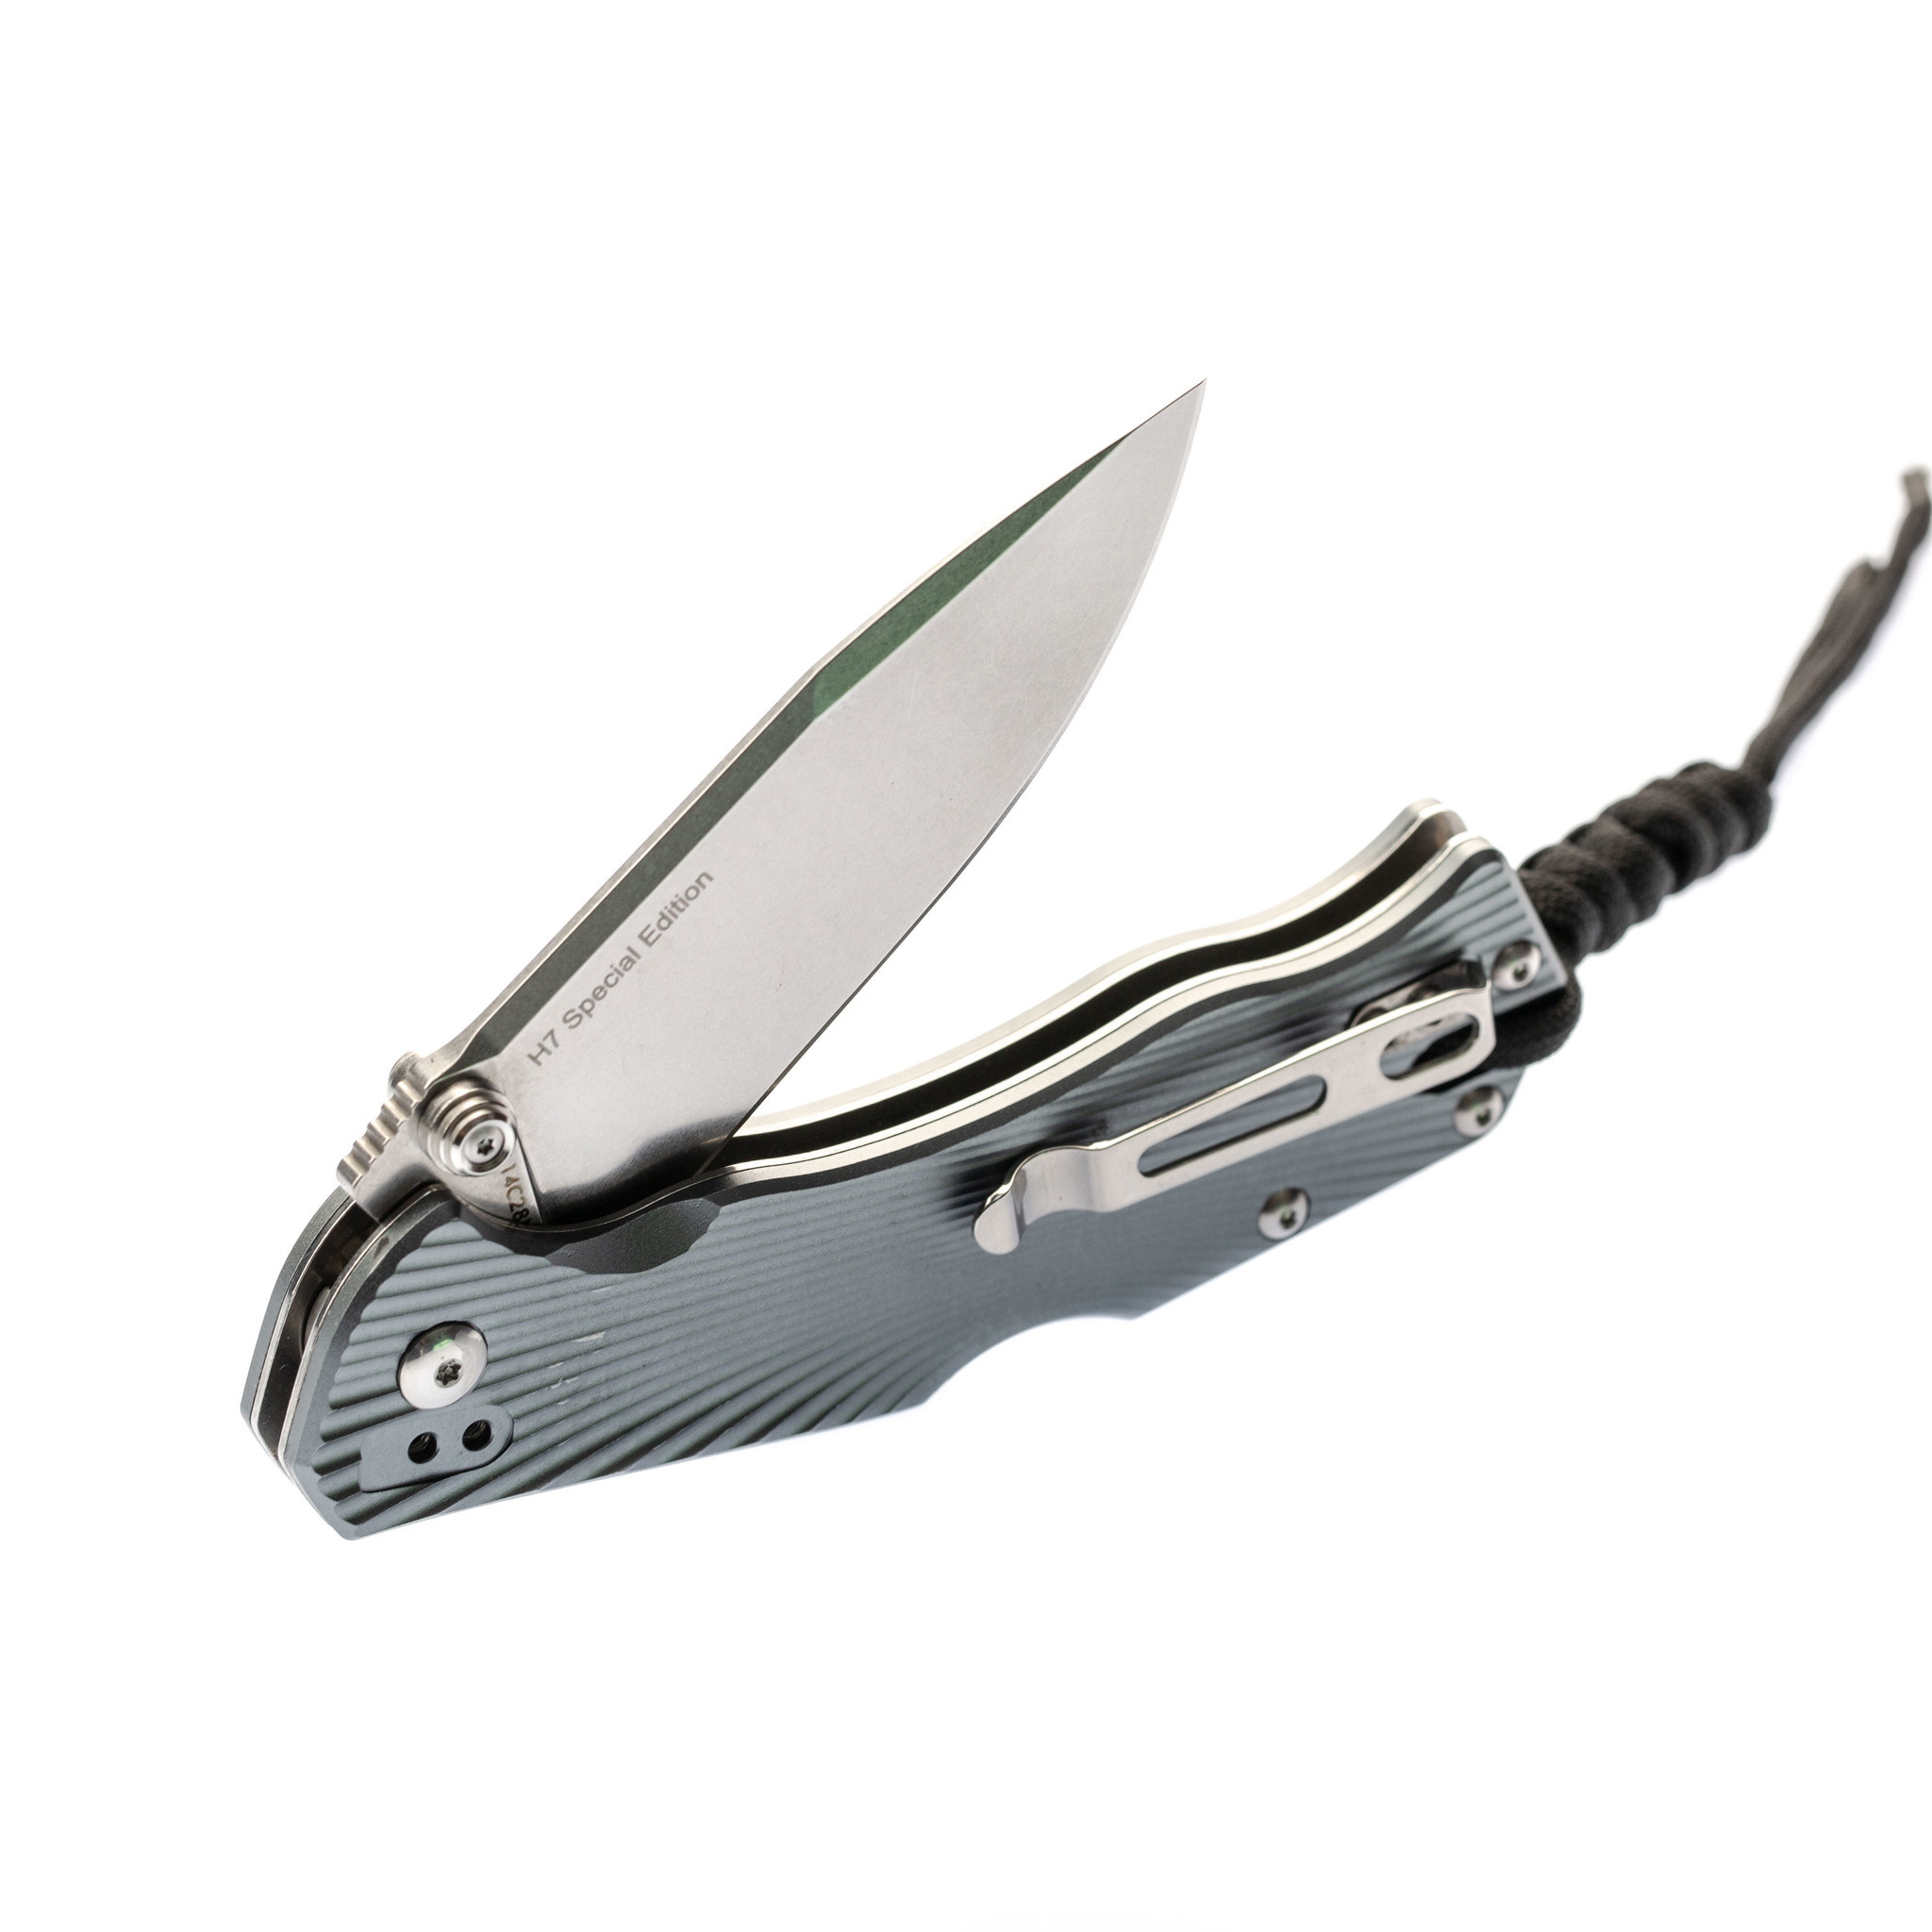 Складной нож RealSteel H7 Special Edition Grey, сталь Sandvik 14C28N - фото 5